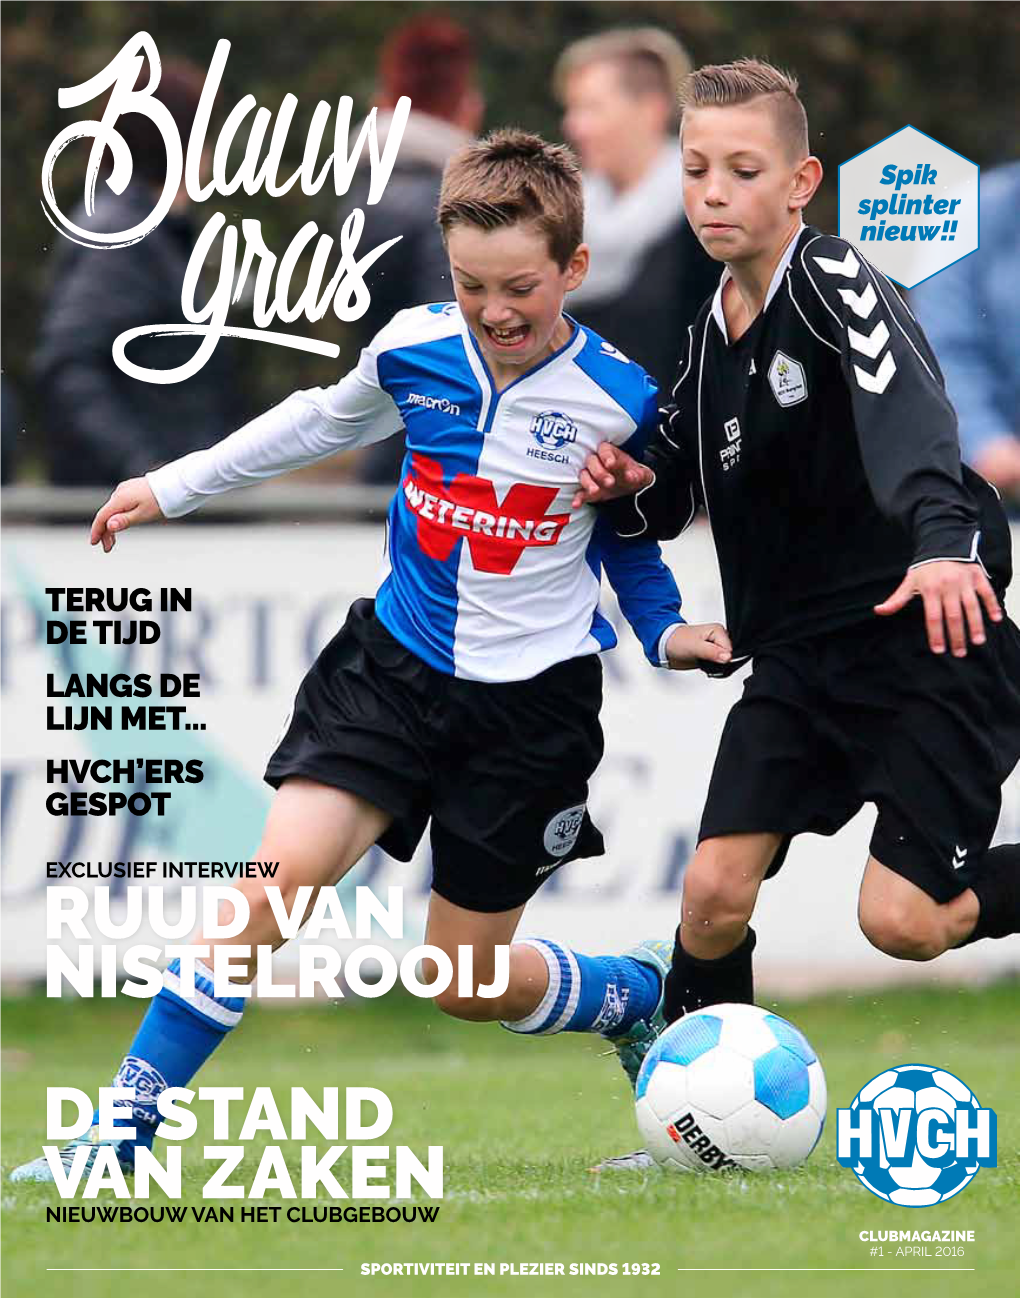 Ruud Van Nistelrooij De Stand Van Zaken Nieuwbouw Van Het Clubgebouw Clubmagazine #1 - April 2016 Sportiviteit En Plezier Sinds 1932 H.V.C.H